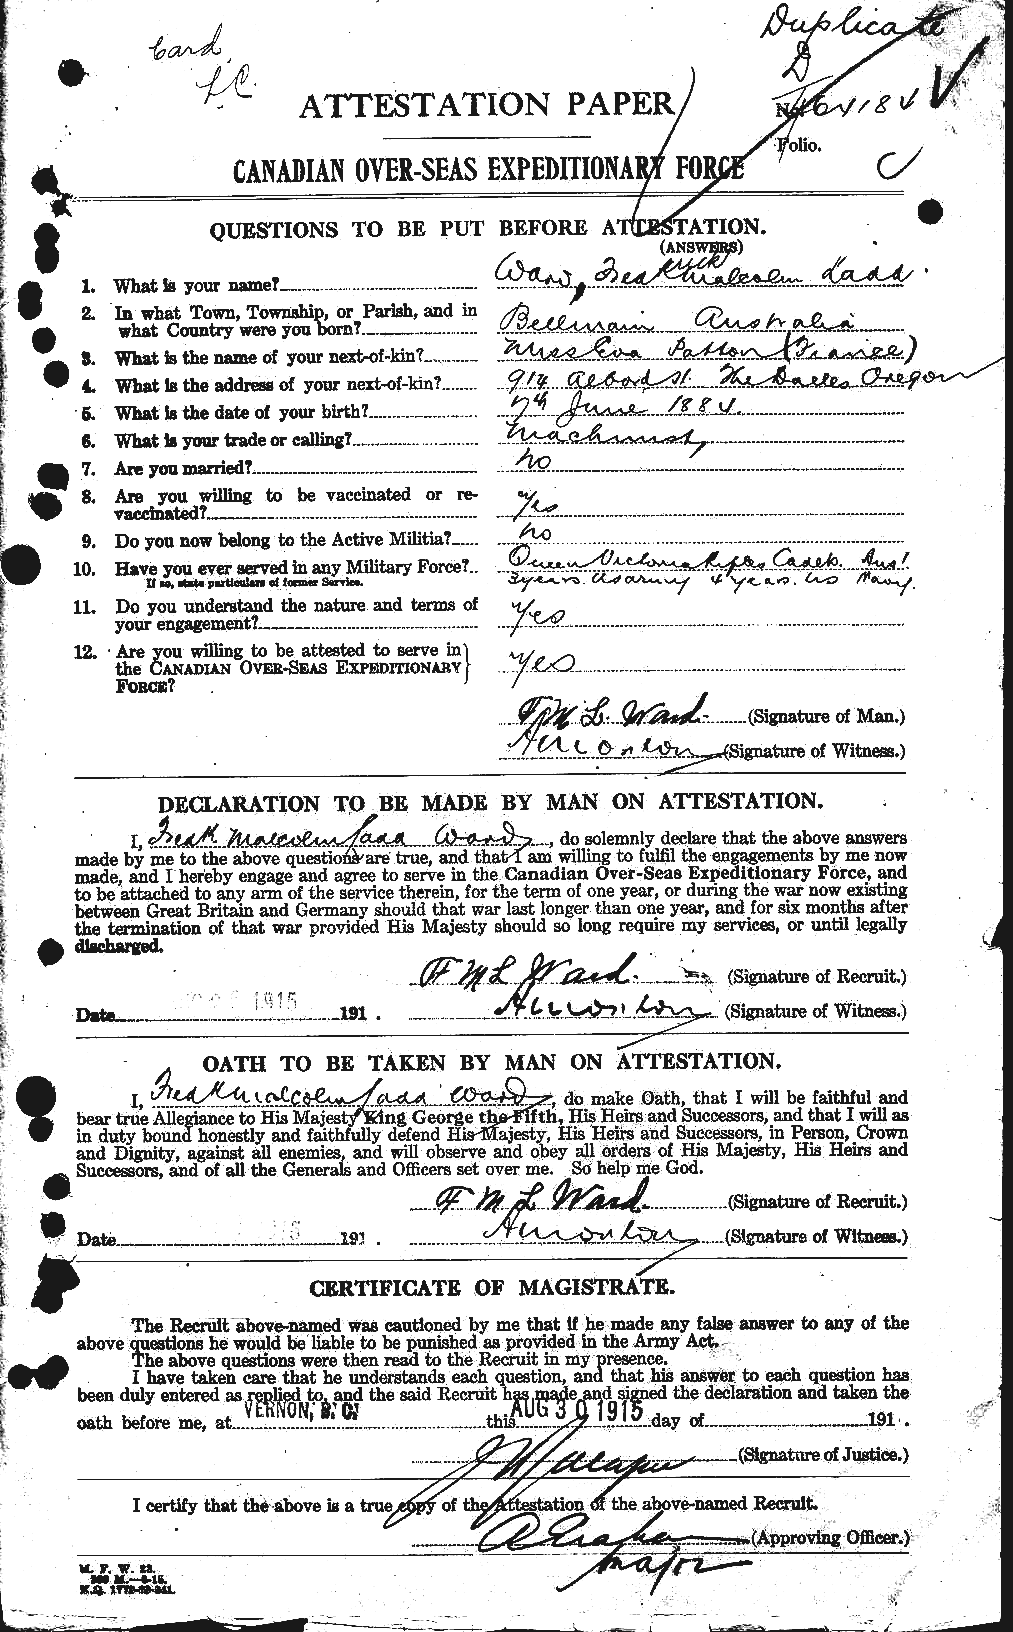 Dossiers du Personnel de la Première Guerre mondiale - CEC 657728a